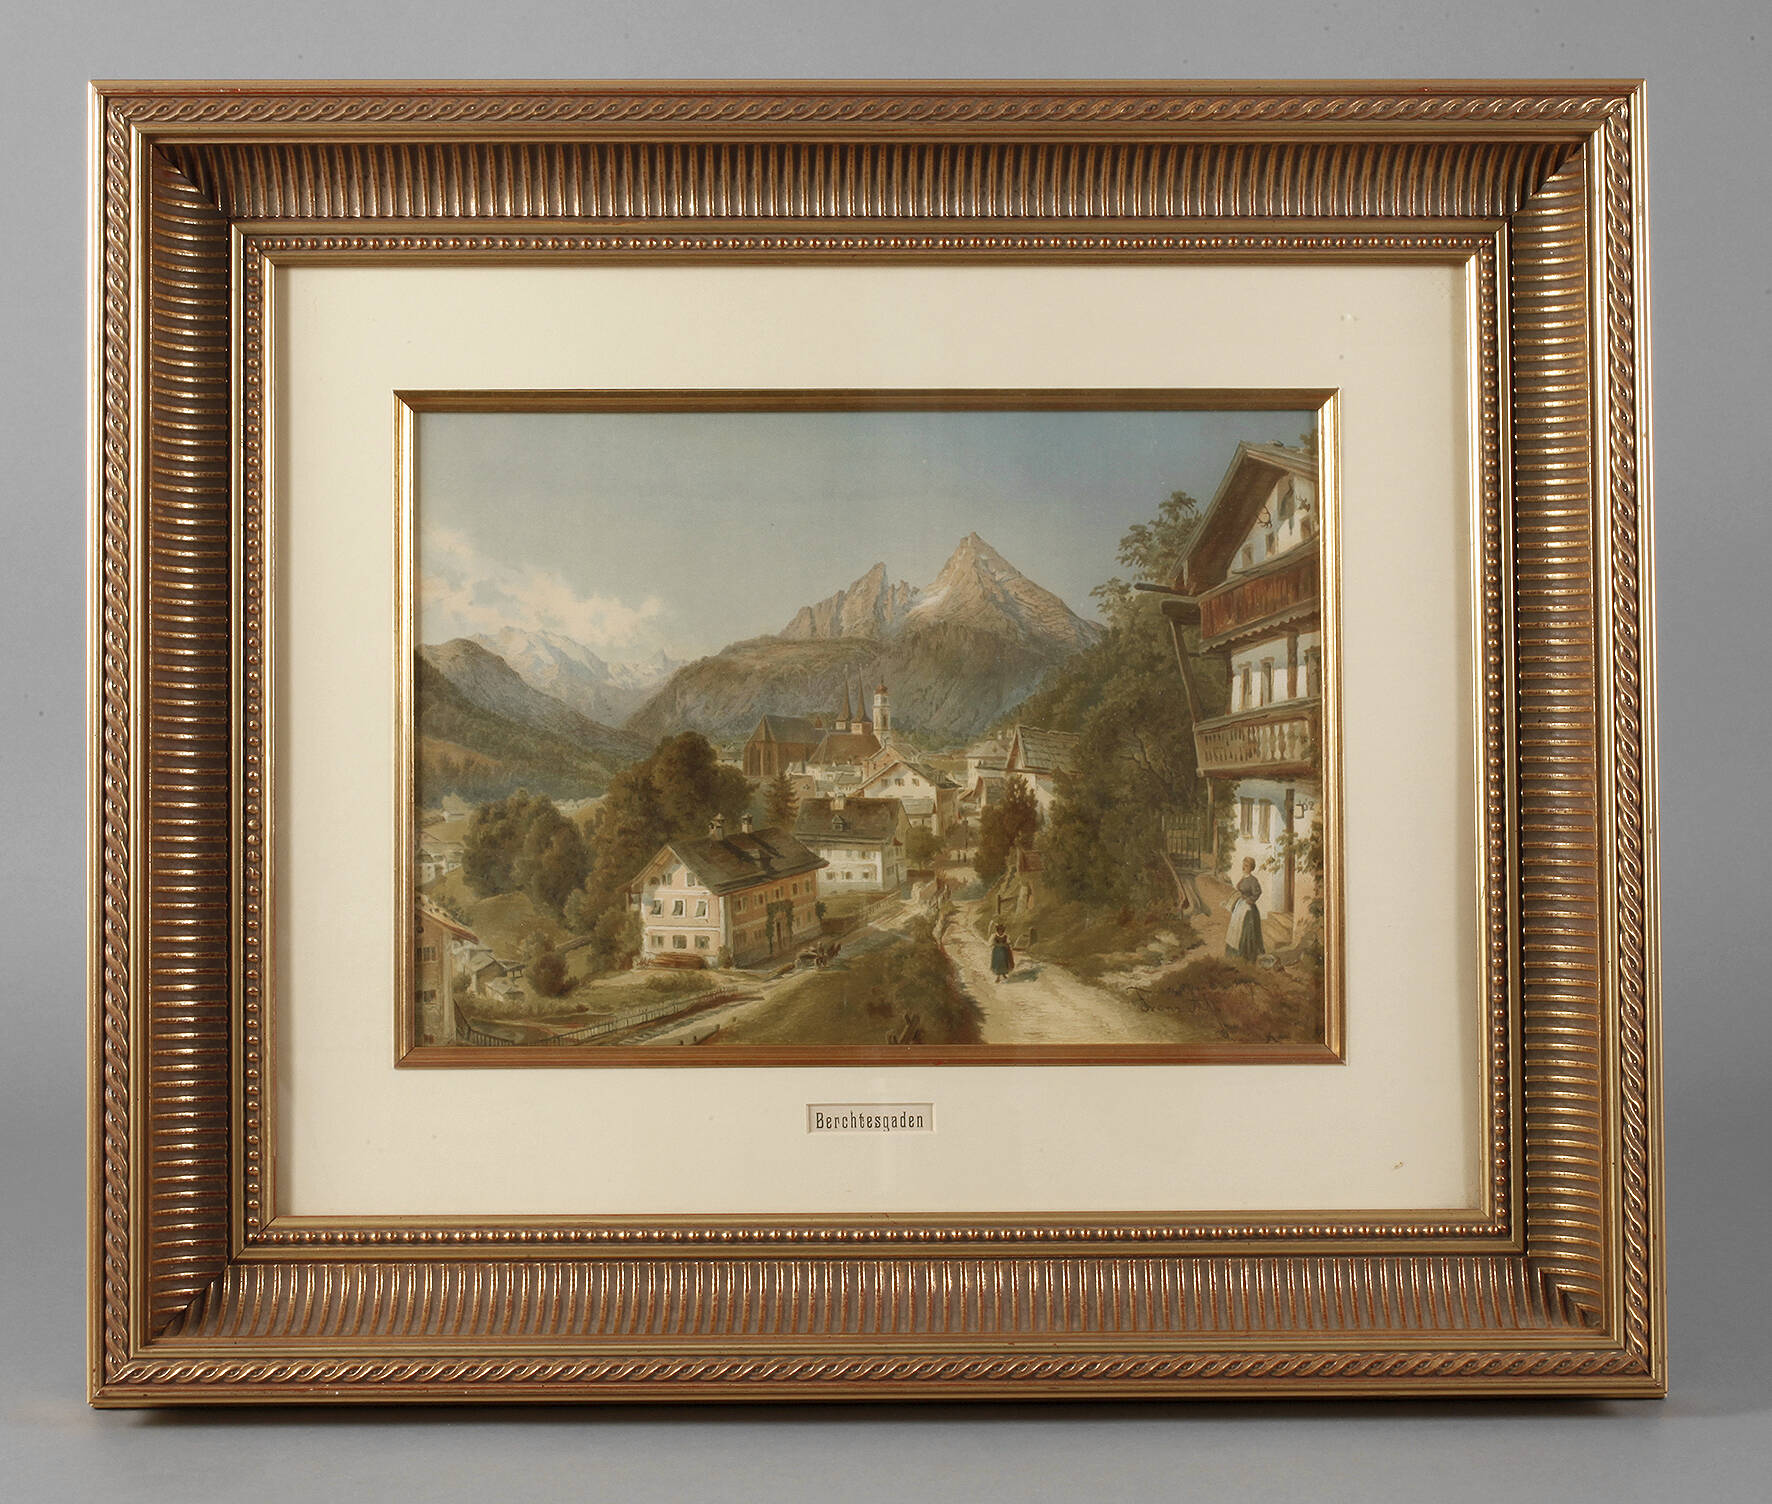 Franz Alt, "Berchtesgaden"